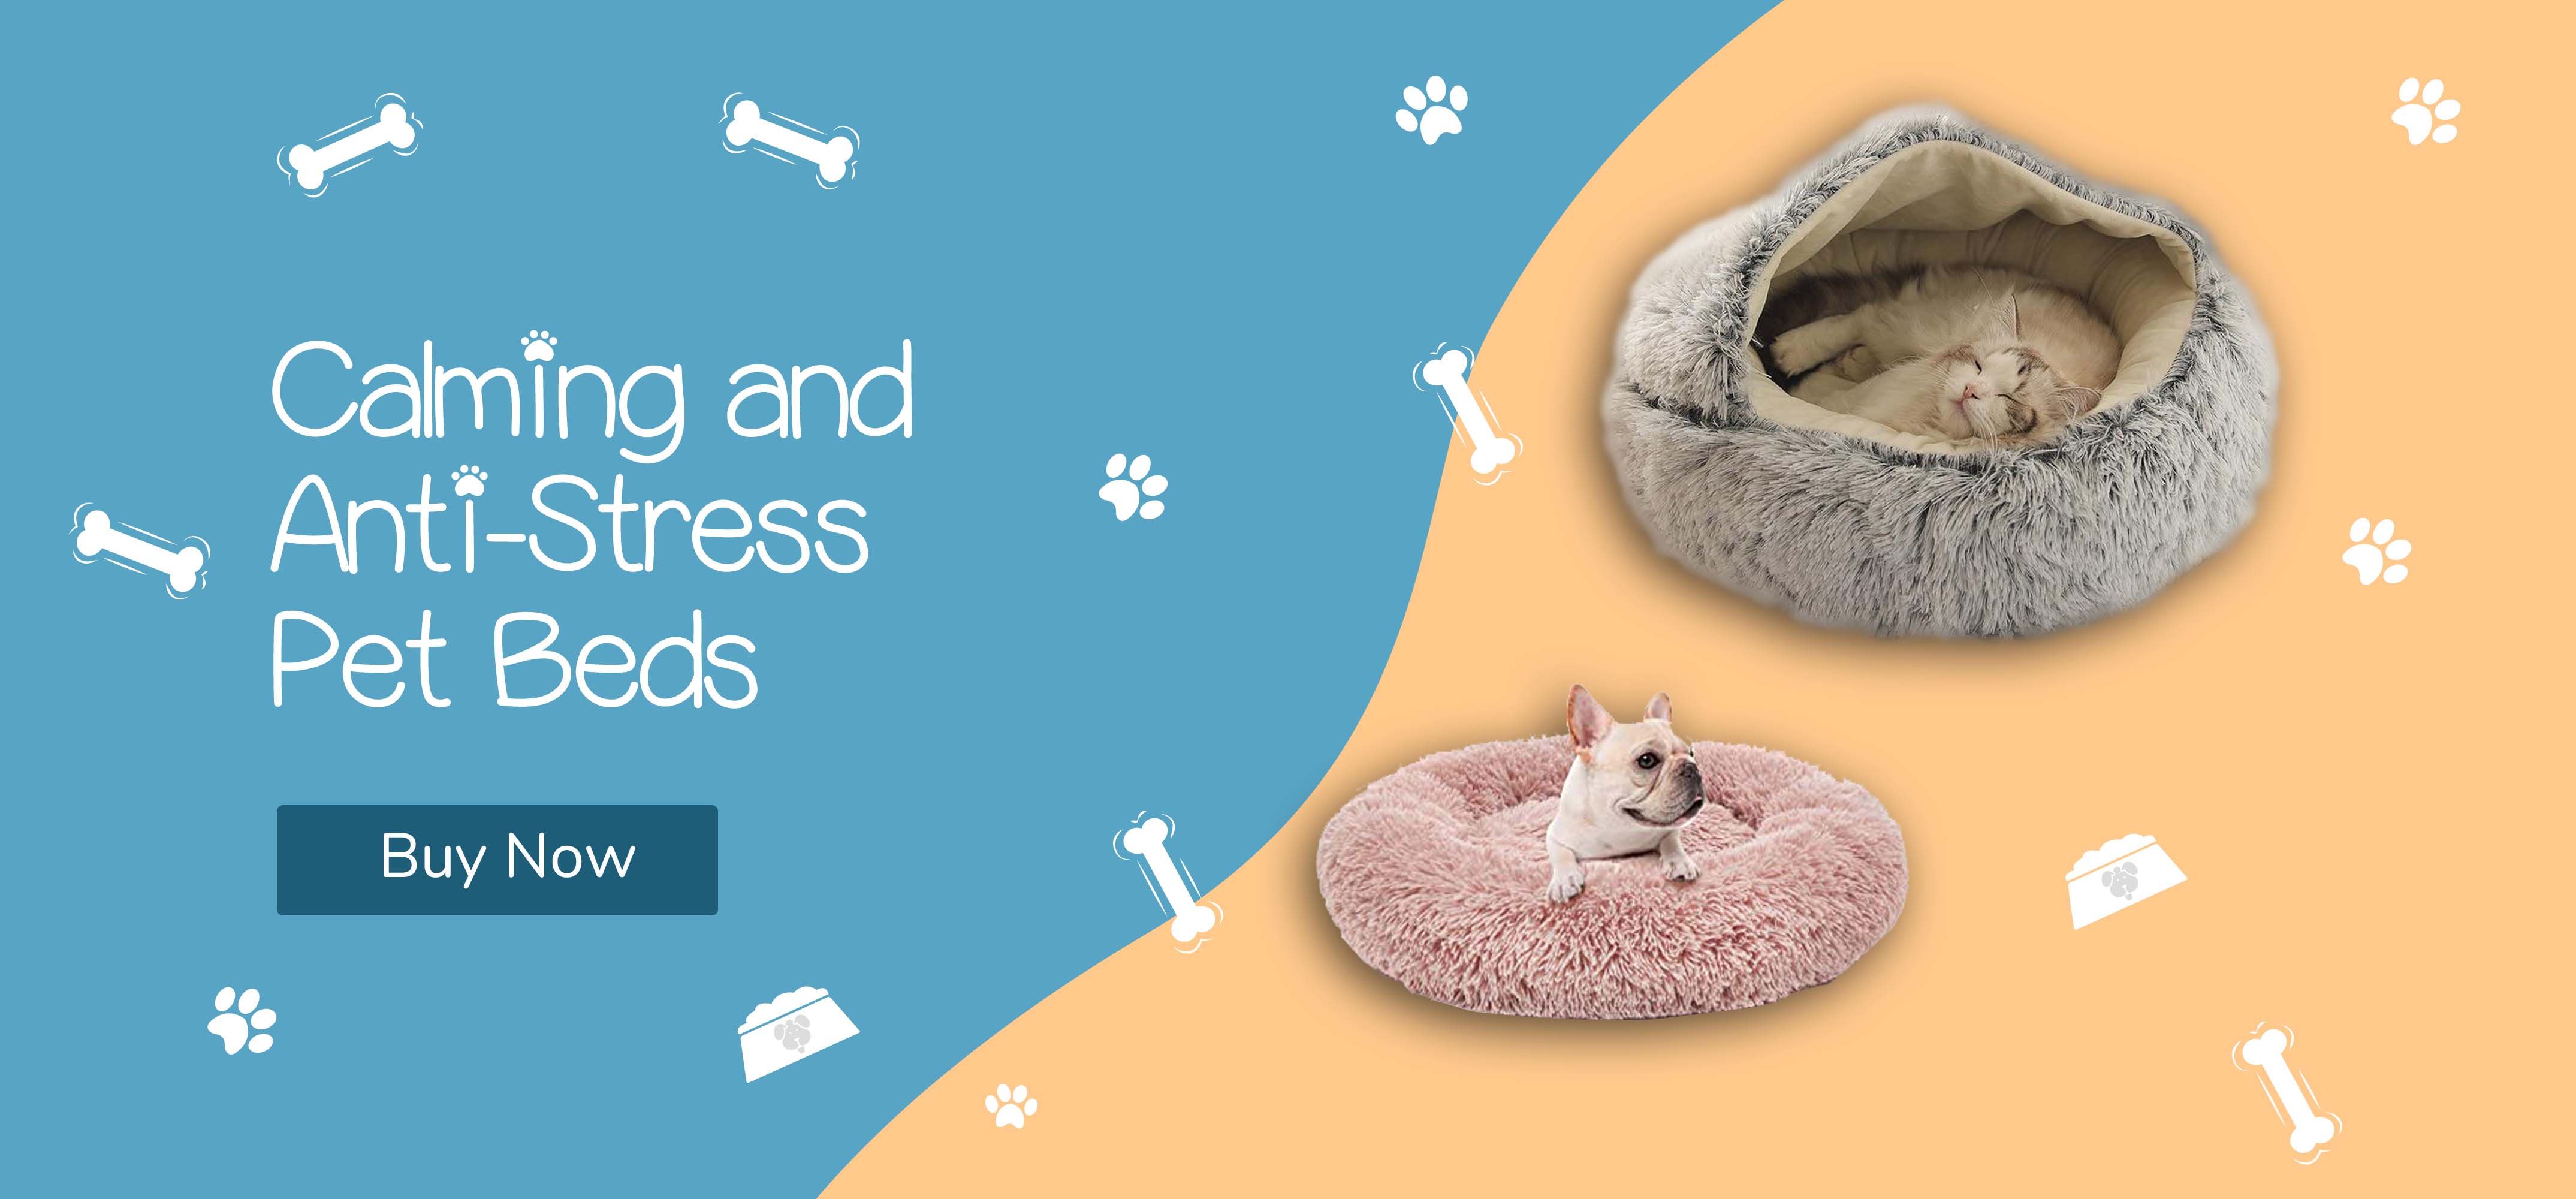 Premium Quality Pet Beds - Fursnpelt.com